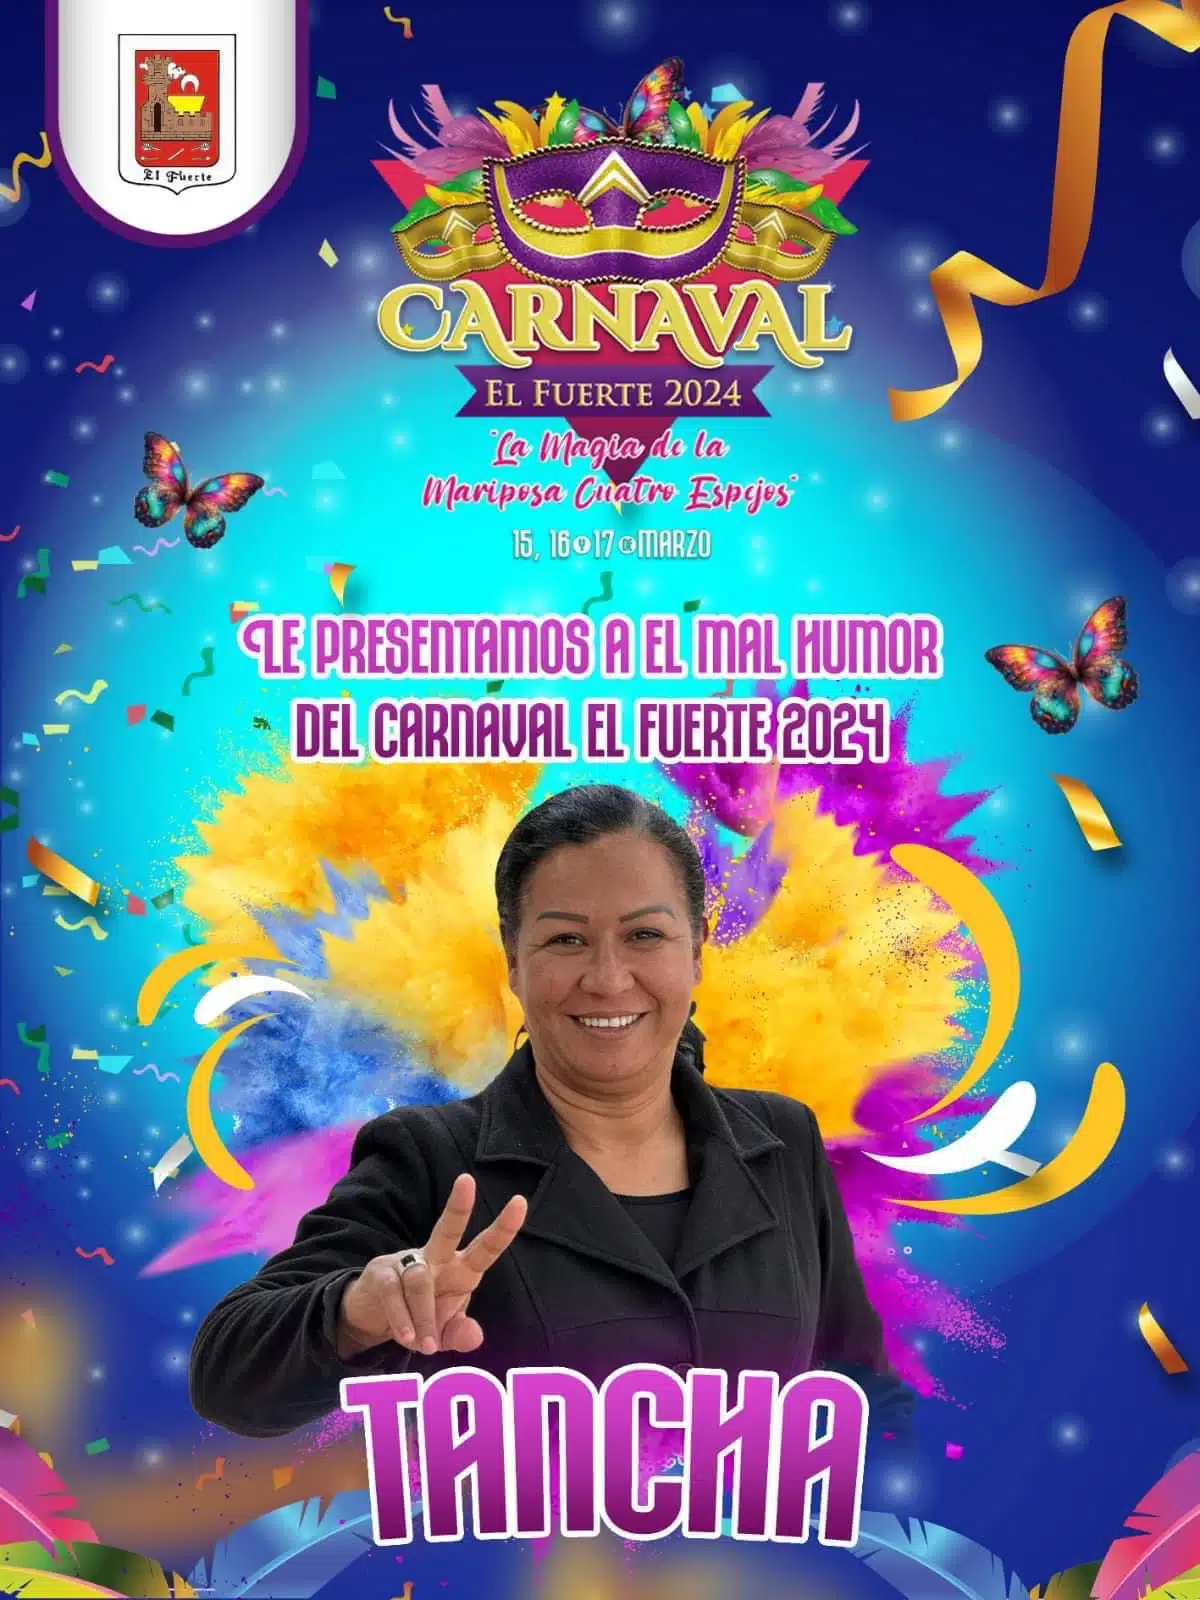 El mal humor del carnaval de El Fuerte 2024